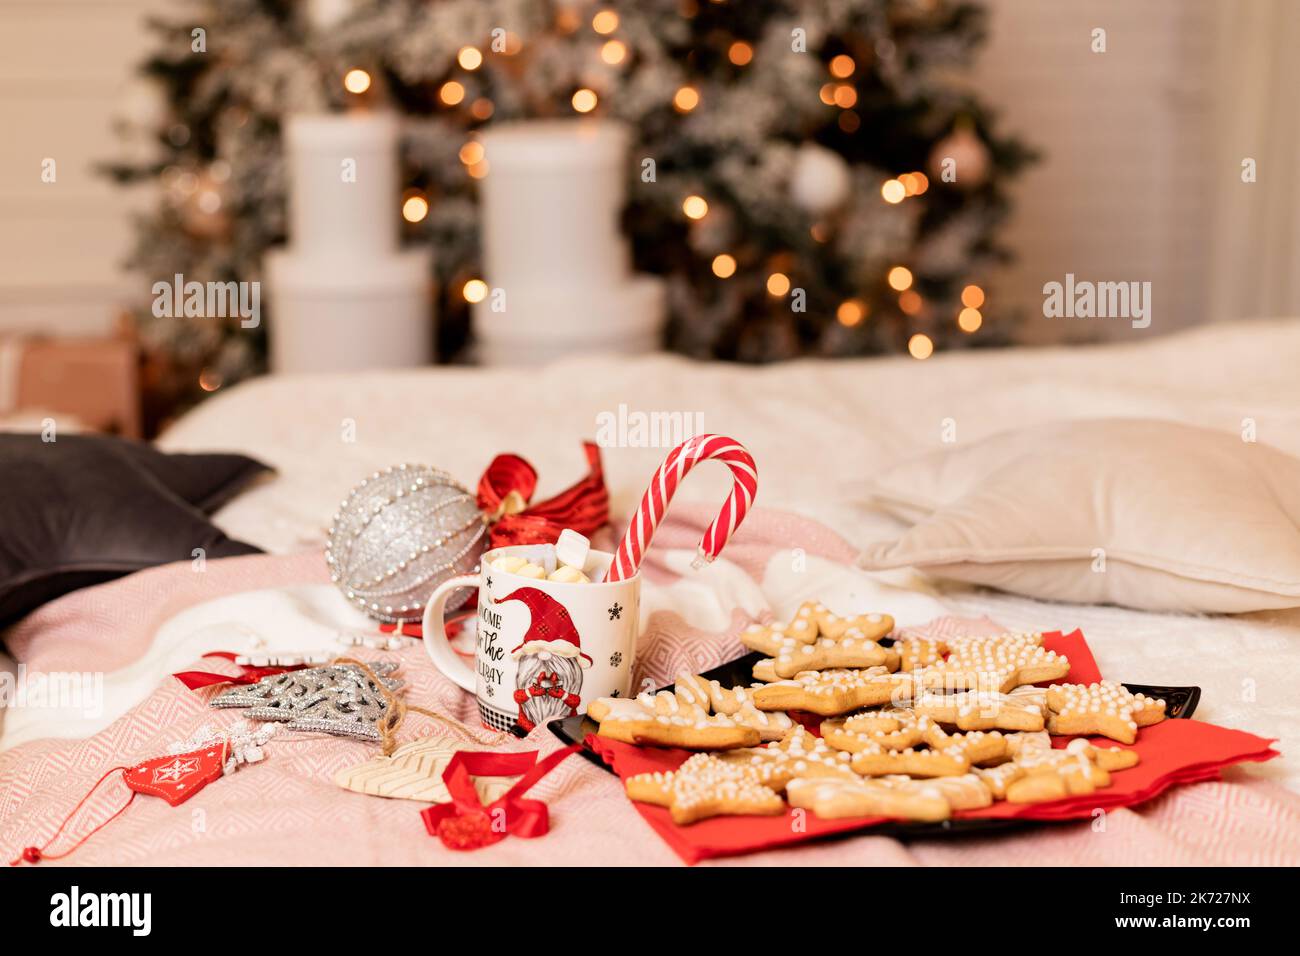 Weihnachtskekse mit Weihnachtsschmuck auf dem Bett im Innenraum Stockfoto